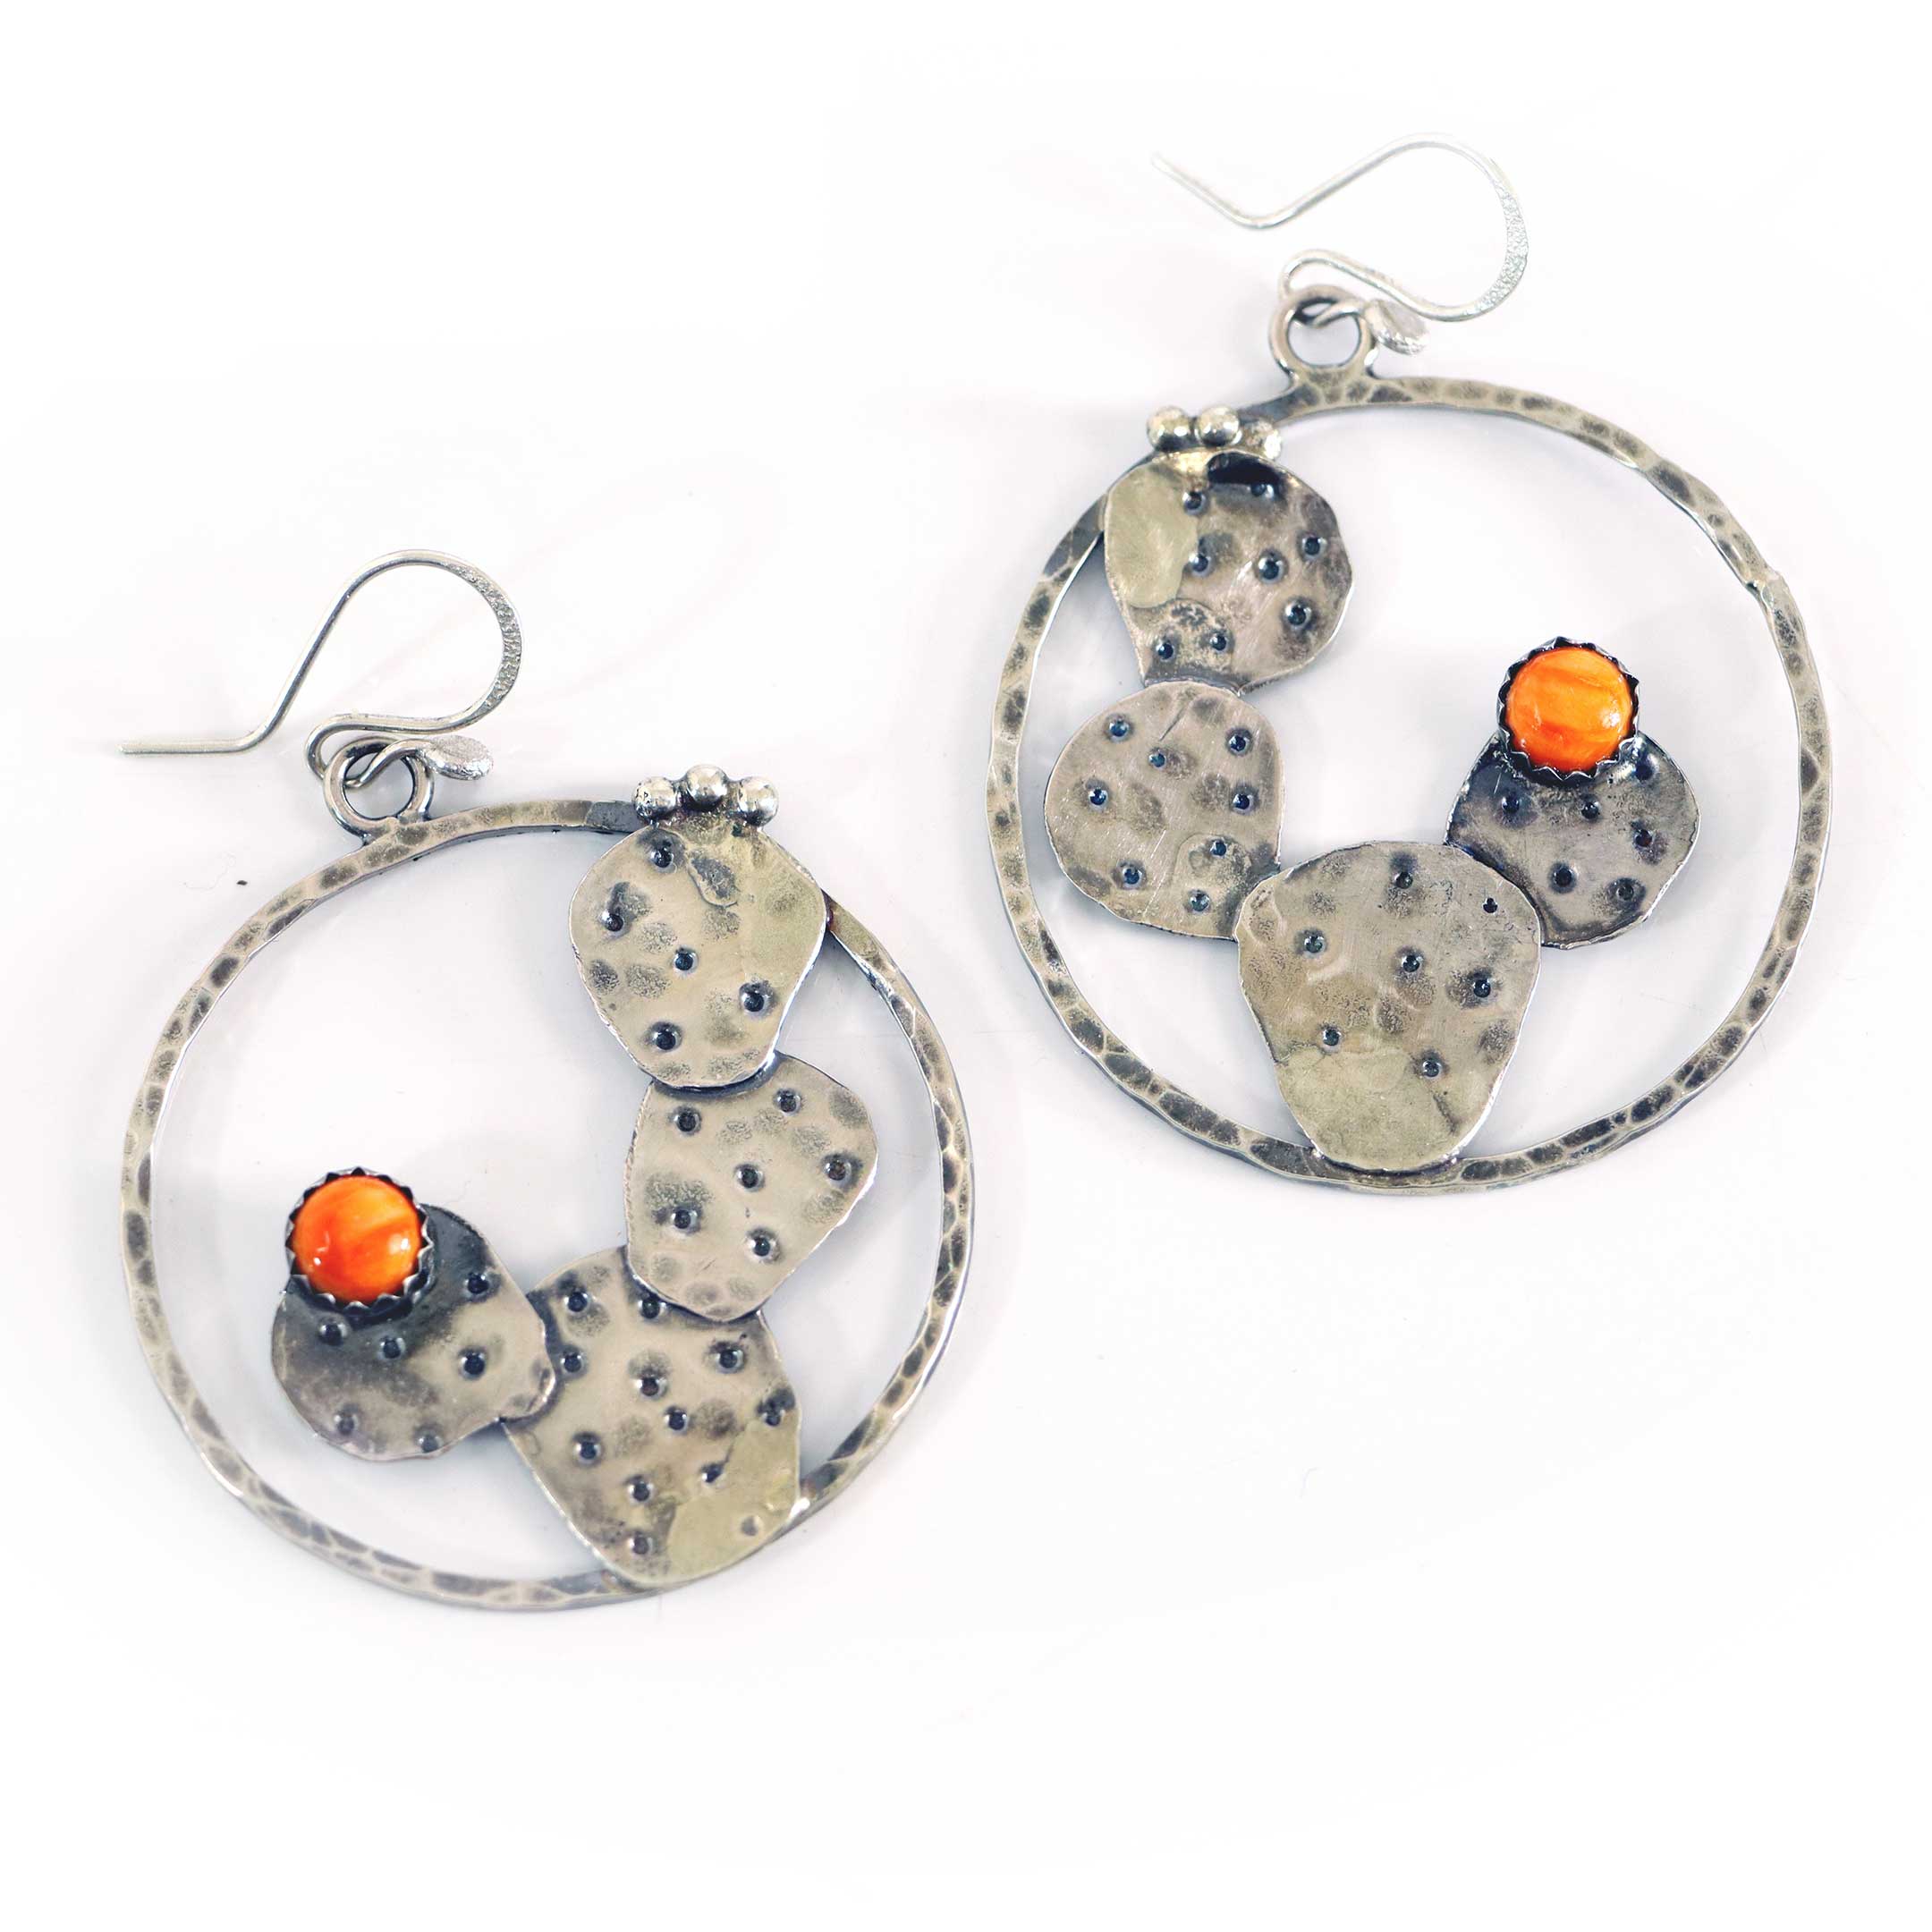 Prickly Pear Hoop Earrings in Sterling Silver